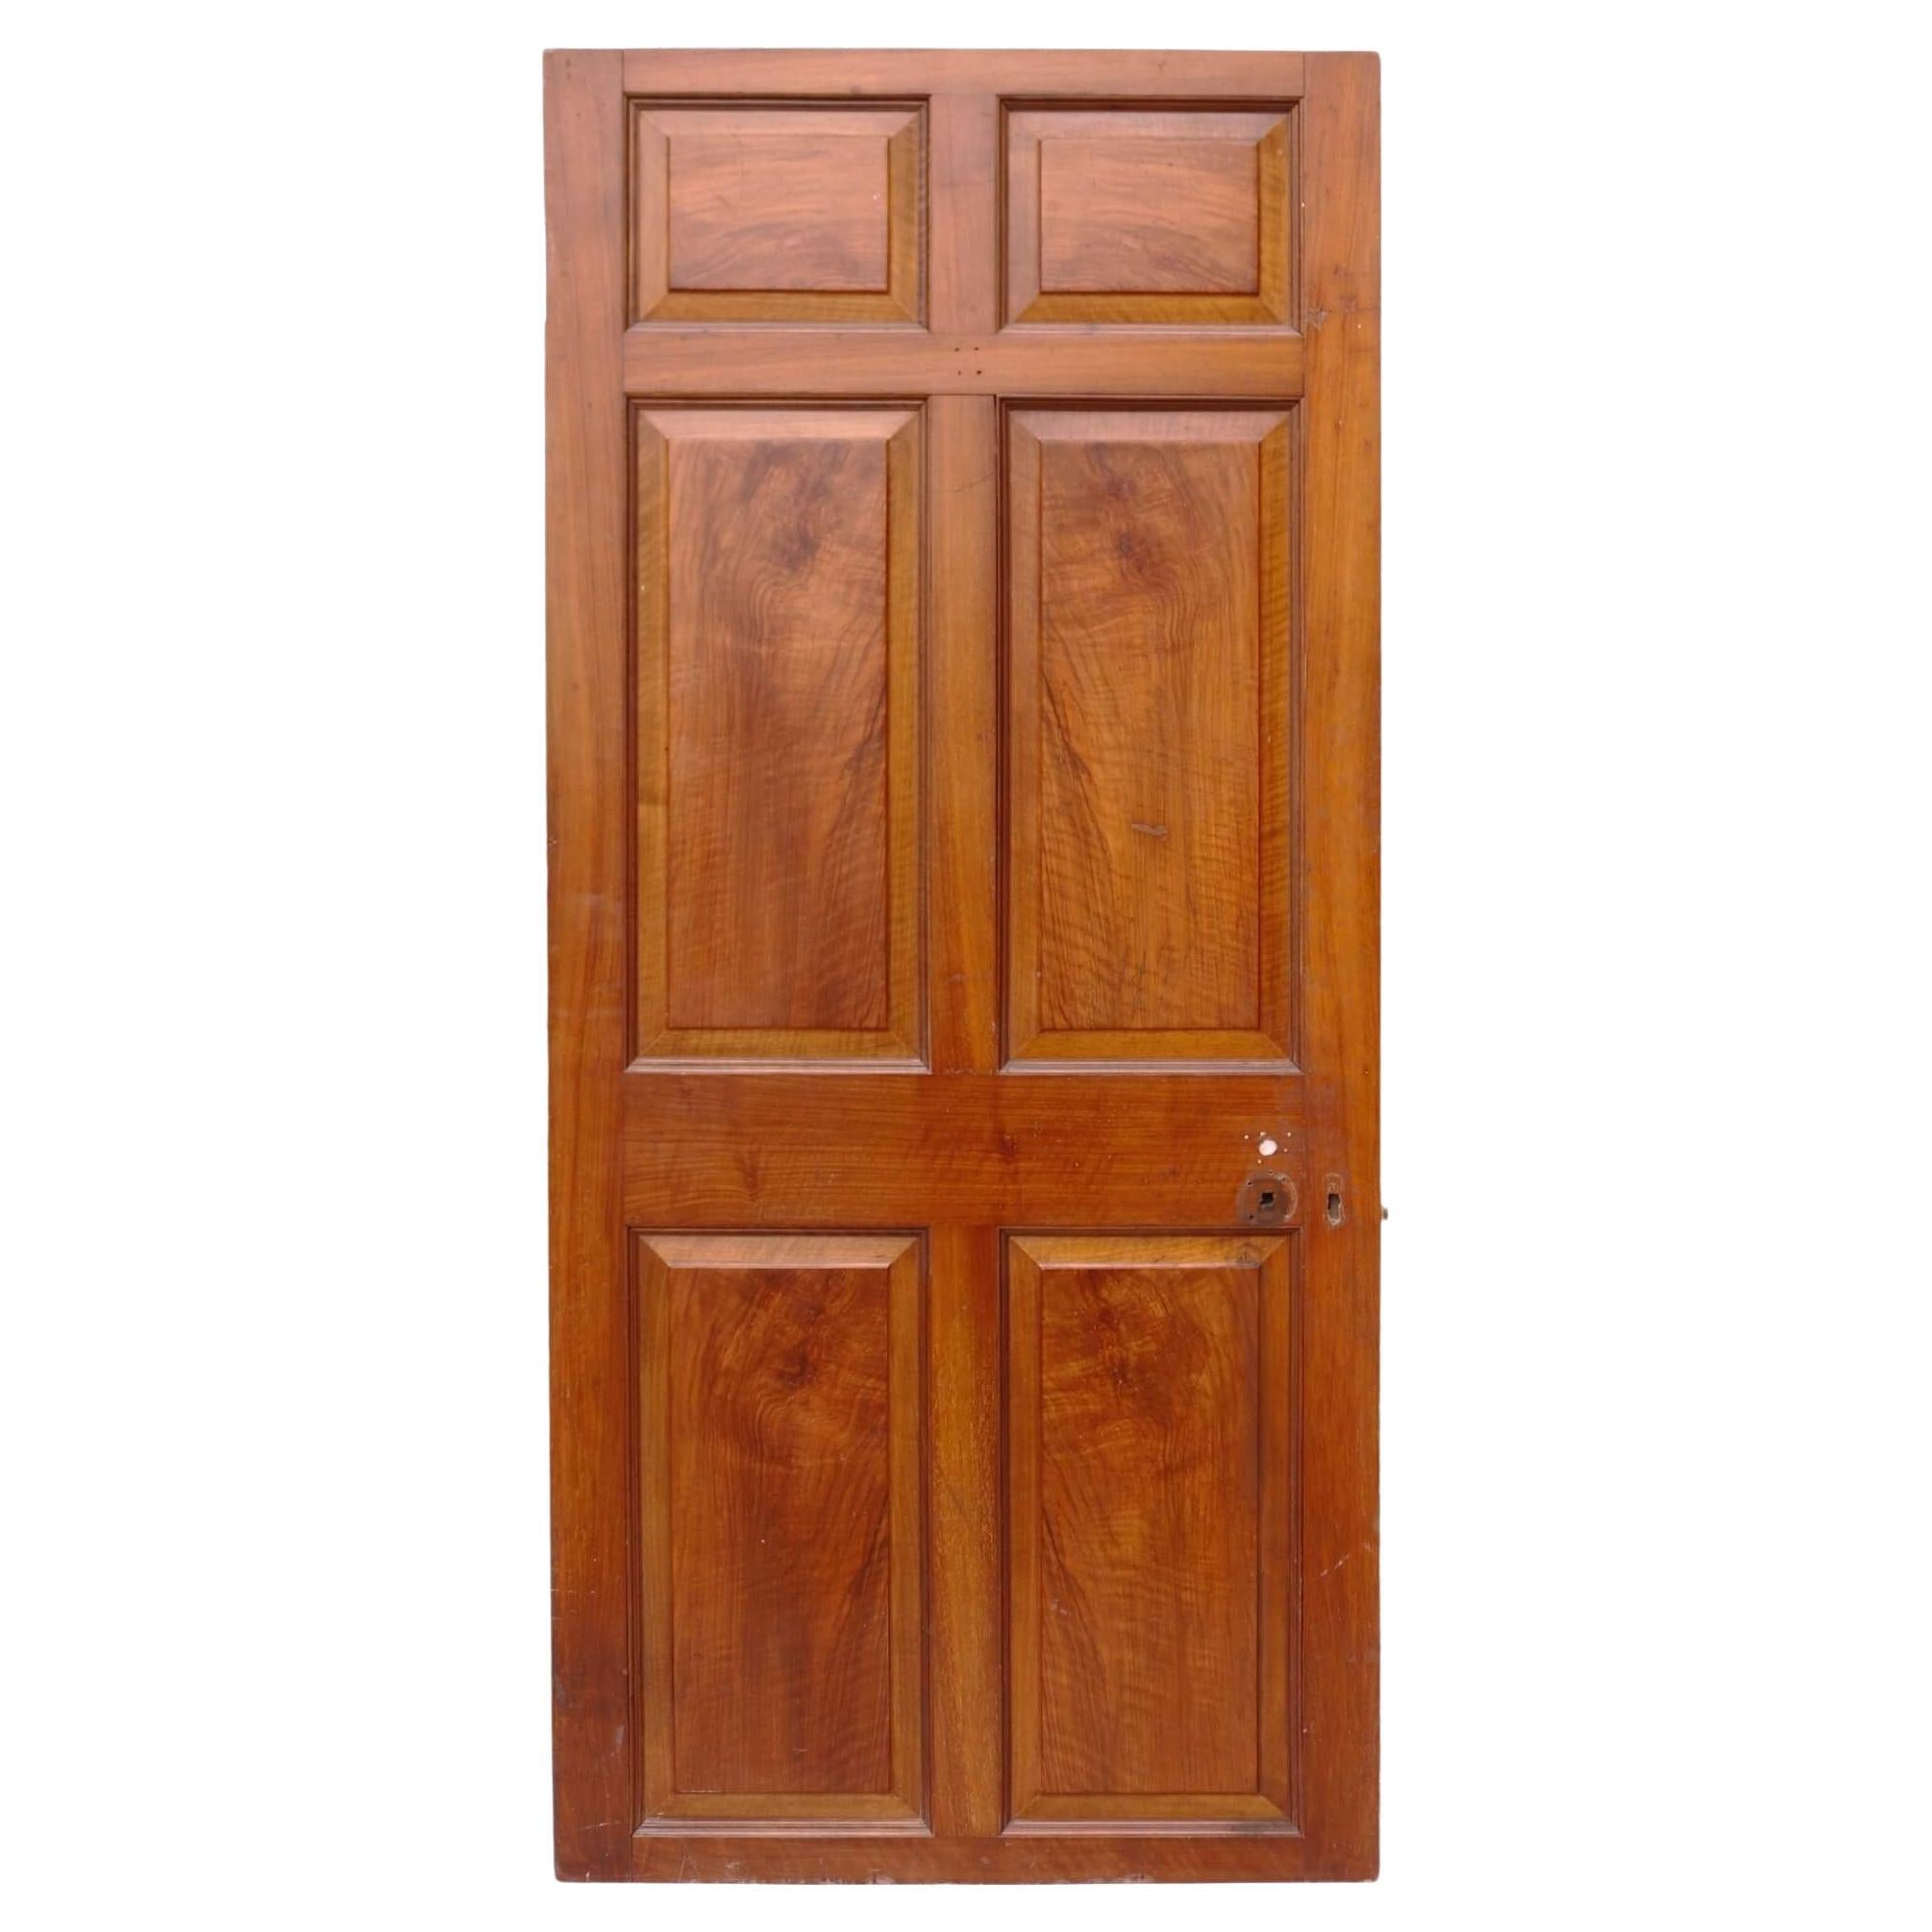 Reclaimed Georgian Walnut Veneer Internal Door For Sale